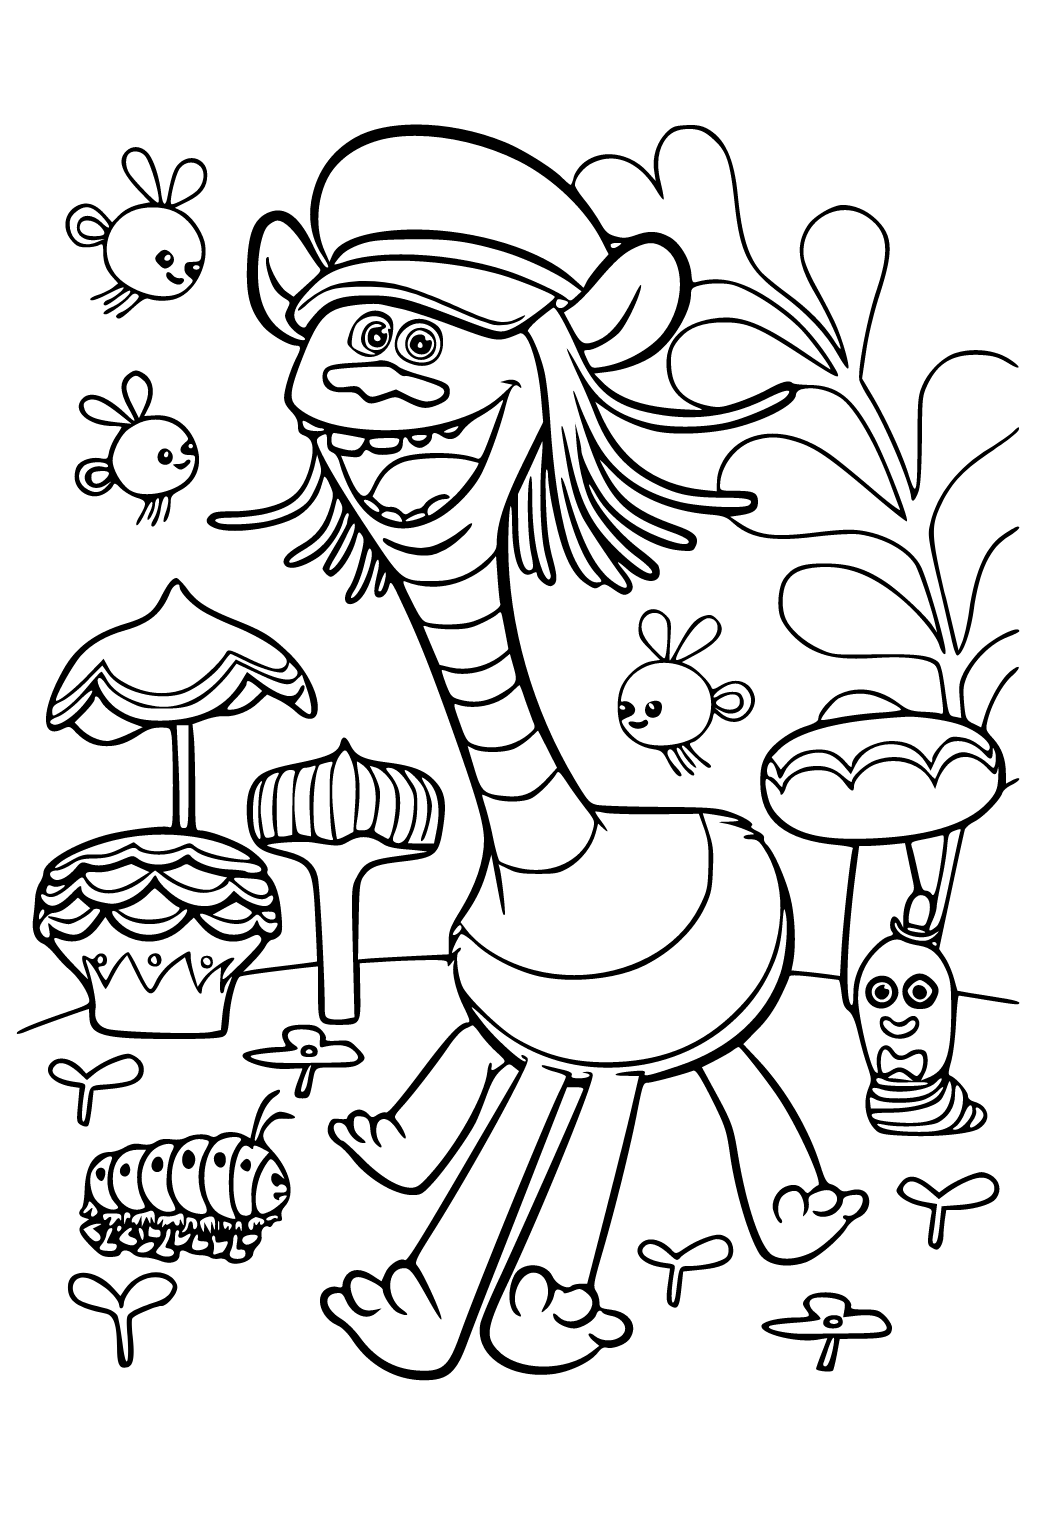 Desenhos de cogumelos para imprimir e colorir - O Mundo Das Crianças